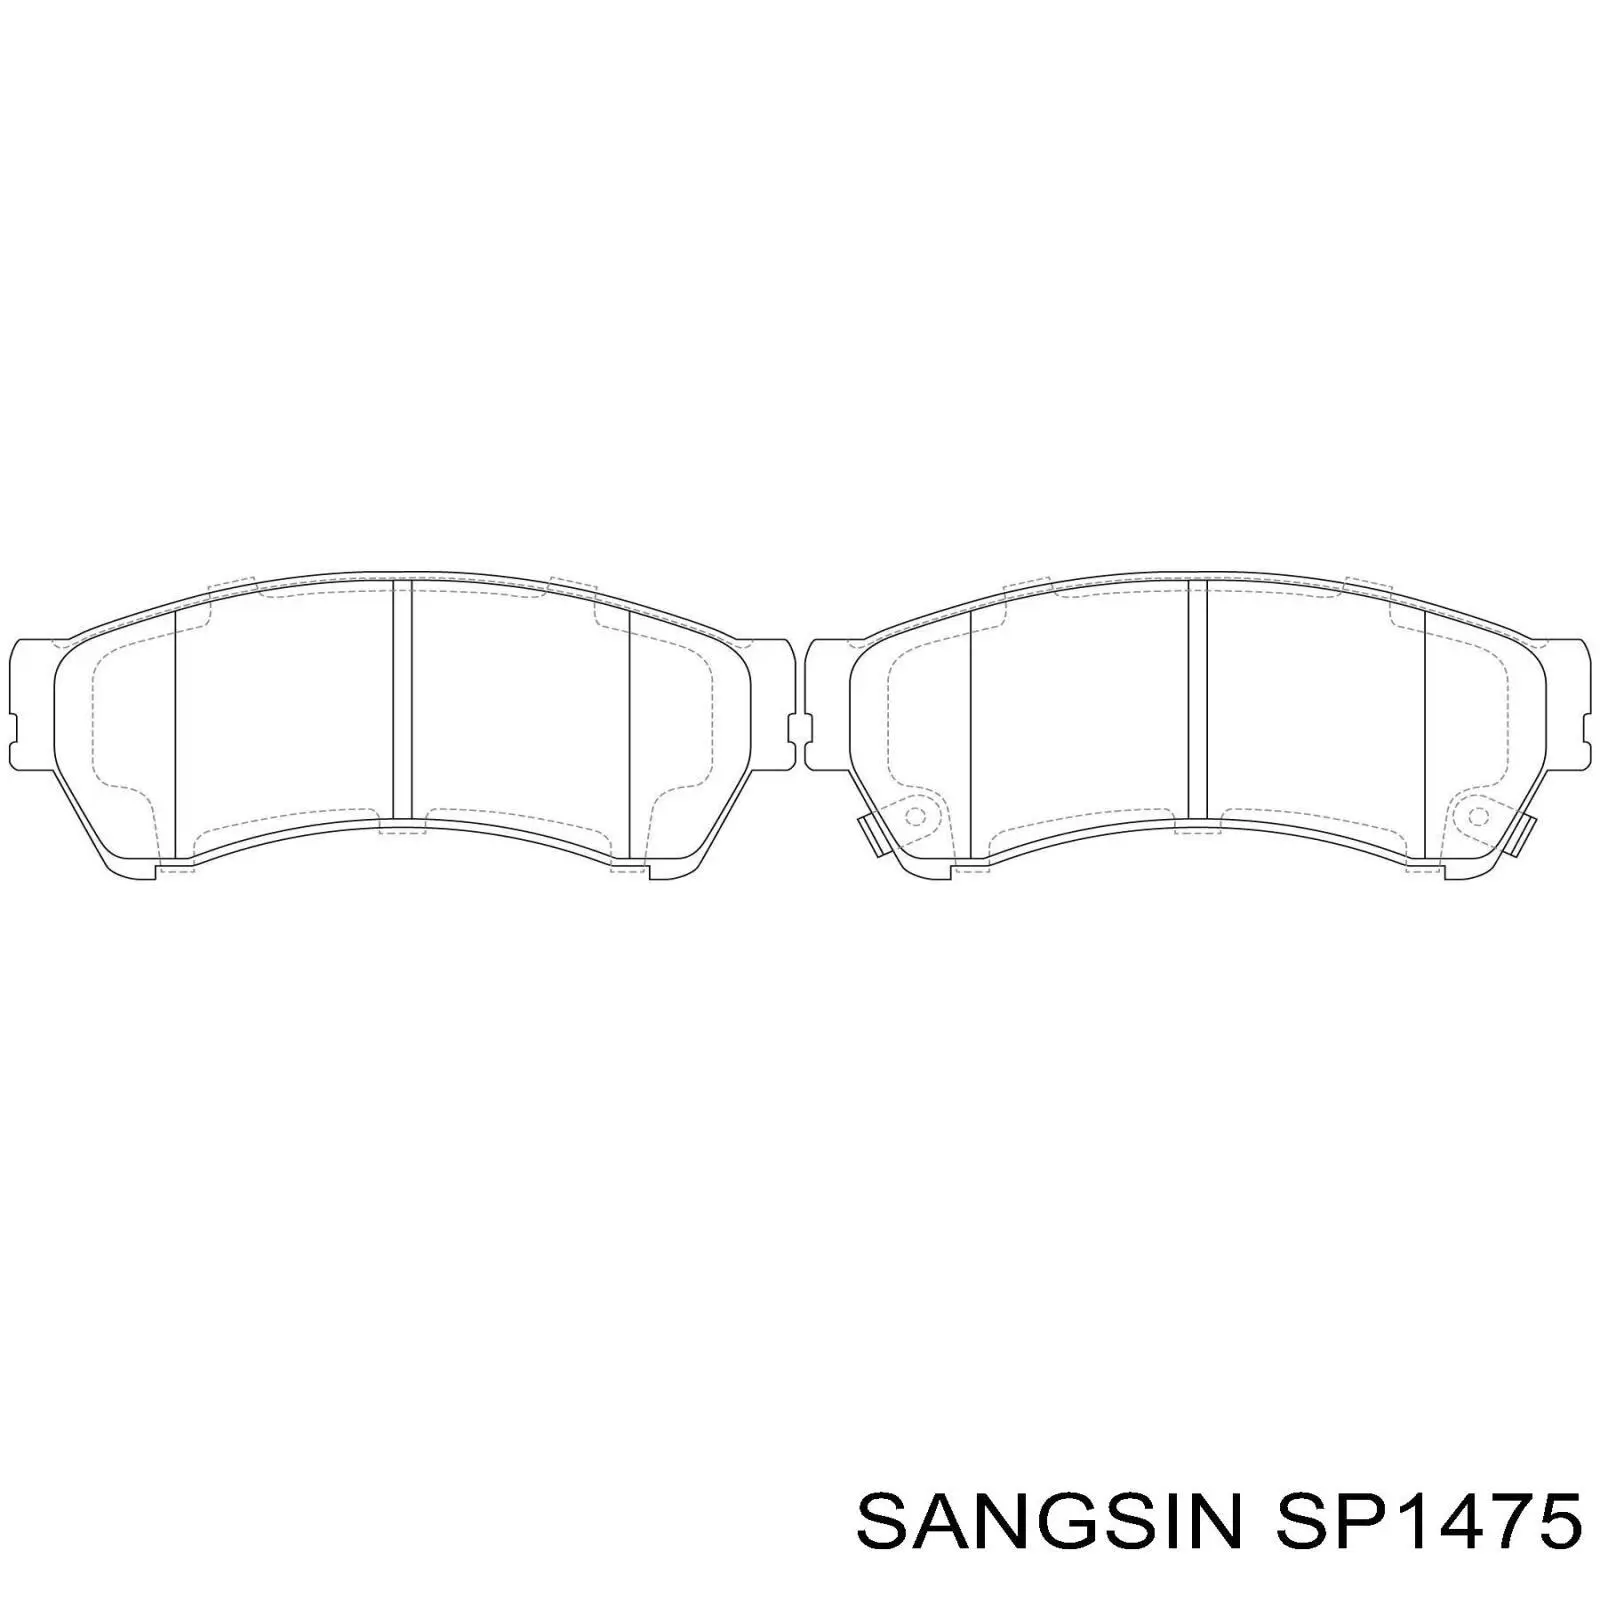 SP1475 Sangsin pastillas de freno delanteras